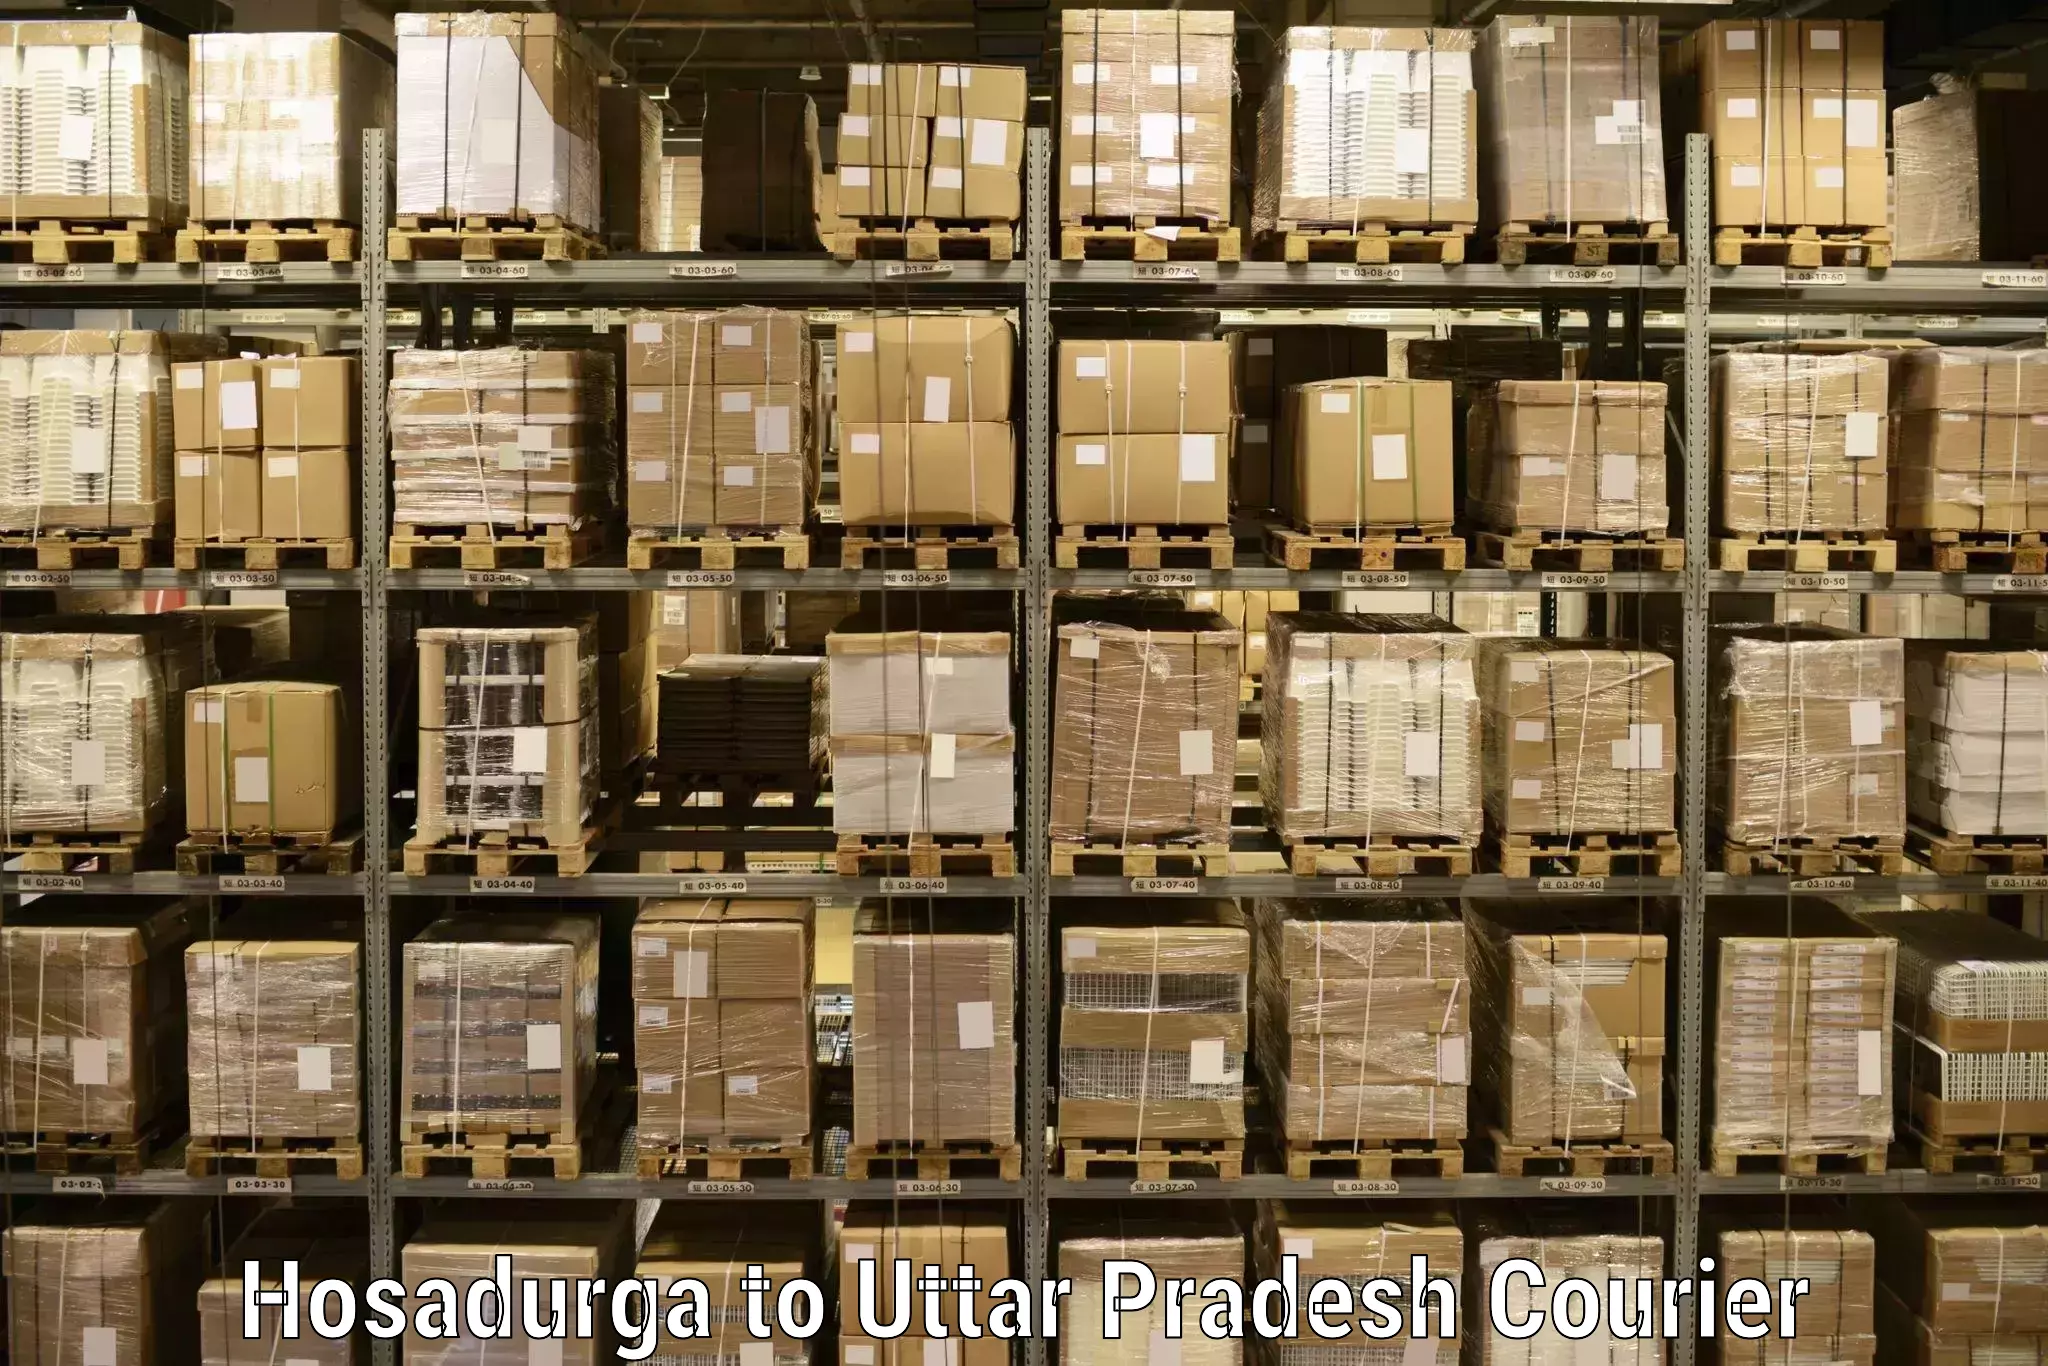 High-capacity parcel service Hosadurga to Marihan